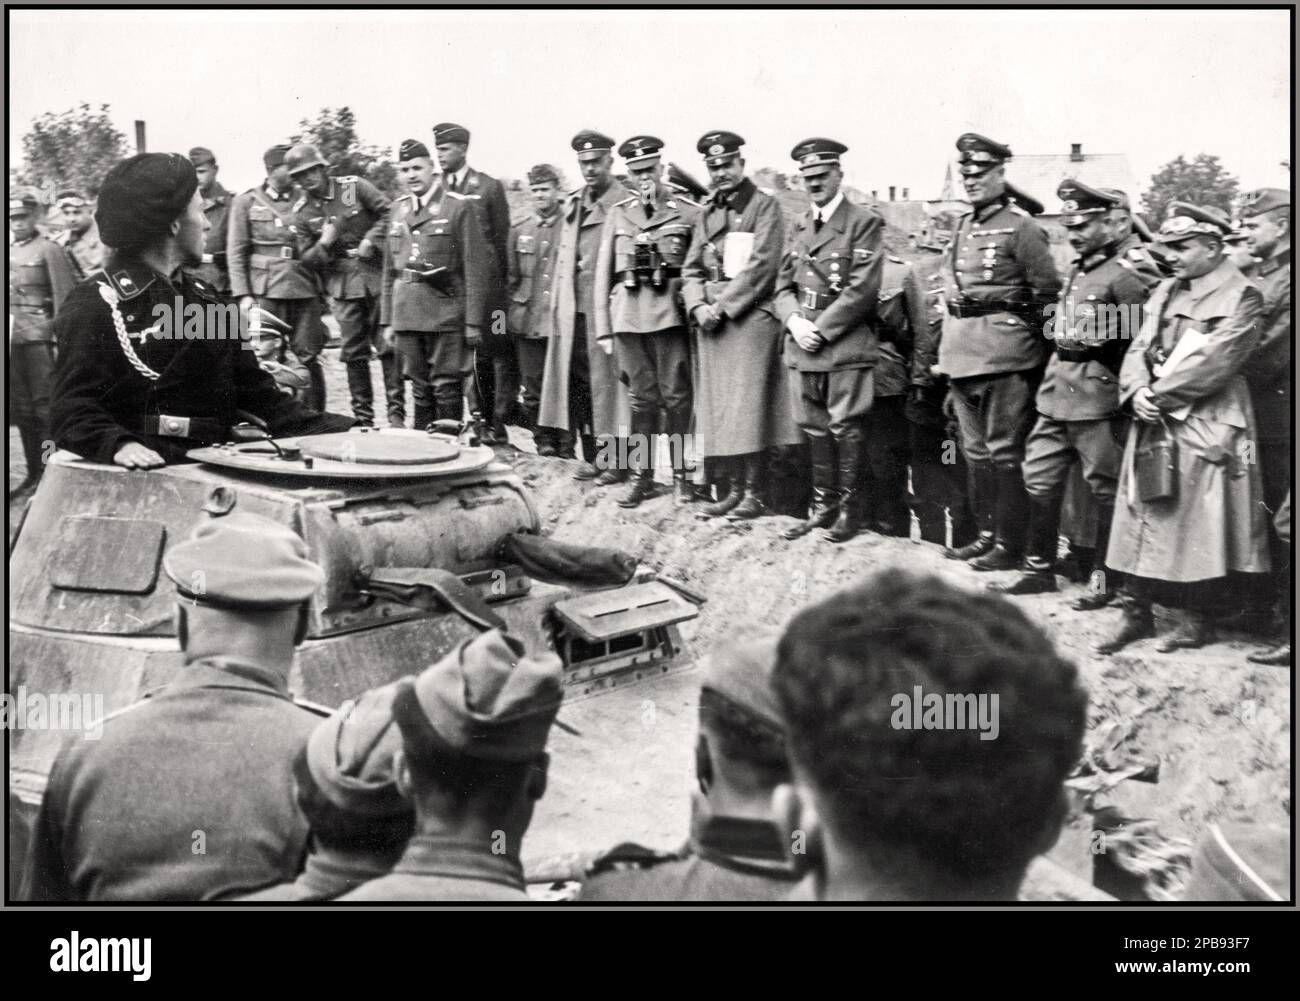 POLENS NATIONALSOZIALISTISCHE INVASION Adolf Hitlers Besuch beim 19. Gepanzerten Korps von General Heinz Guderian zu Beginn des Zweiten Weltkriegs führte Guderian ein gepanzertes Korps bei der Invasion Polens an. Truppenparade. Hitler (4. von rechts) beobachtet einen vorbeifahrenden Panzer-Panzer-Commander in seinem Panzer I. Ebenfalls sichtbar: General Heinz Guderian (5. von rechts) und Heinrich Himmler (7. von rechts) bildeten die Menschen Heinz Guderian, Heinrich Himmler, Adolf Hitler Field Marshall Wilhelm Keitel Datum September 1939 Stockfoto